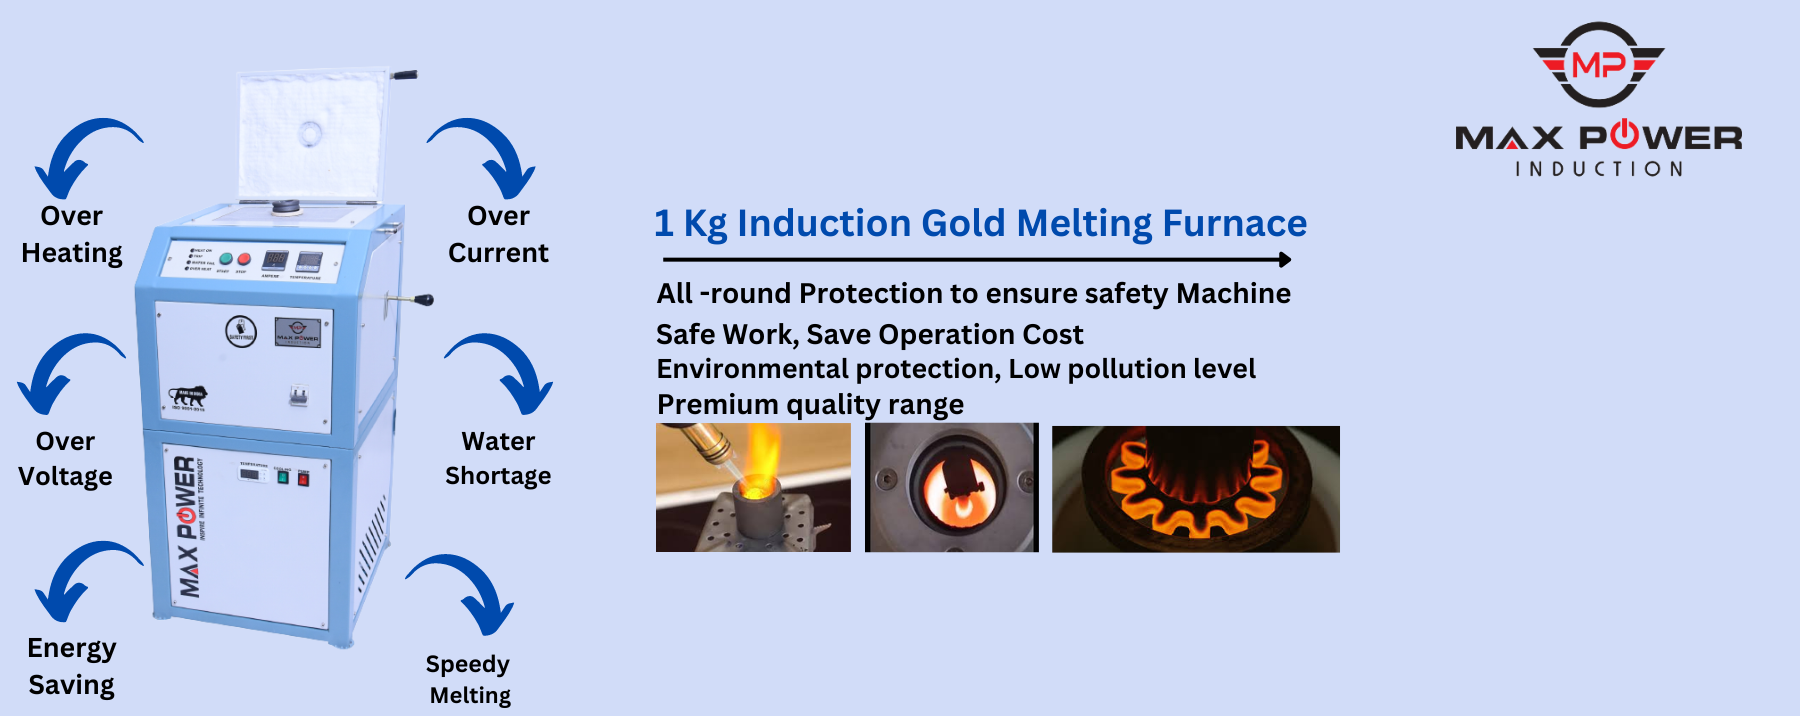 1 Kg Induction Gold Melting Furnace